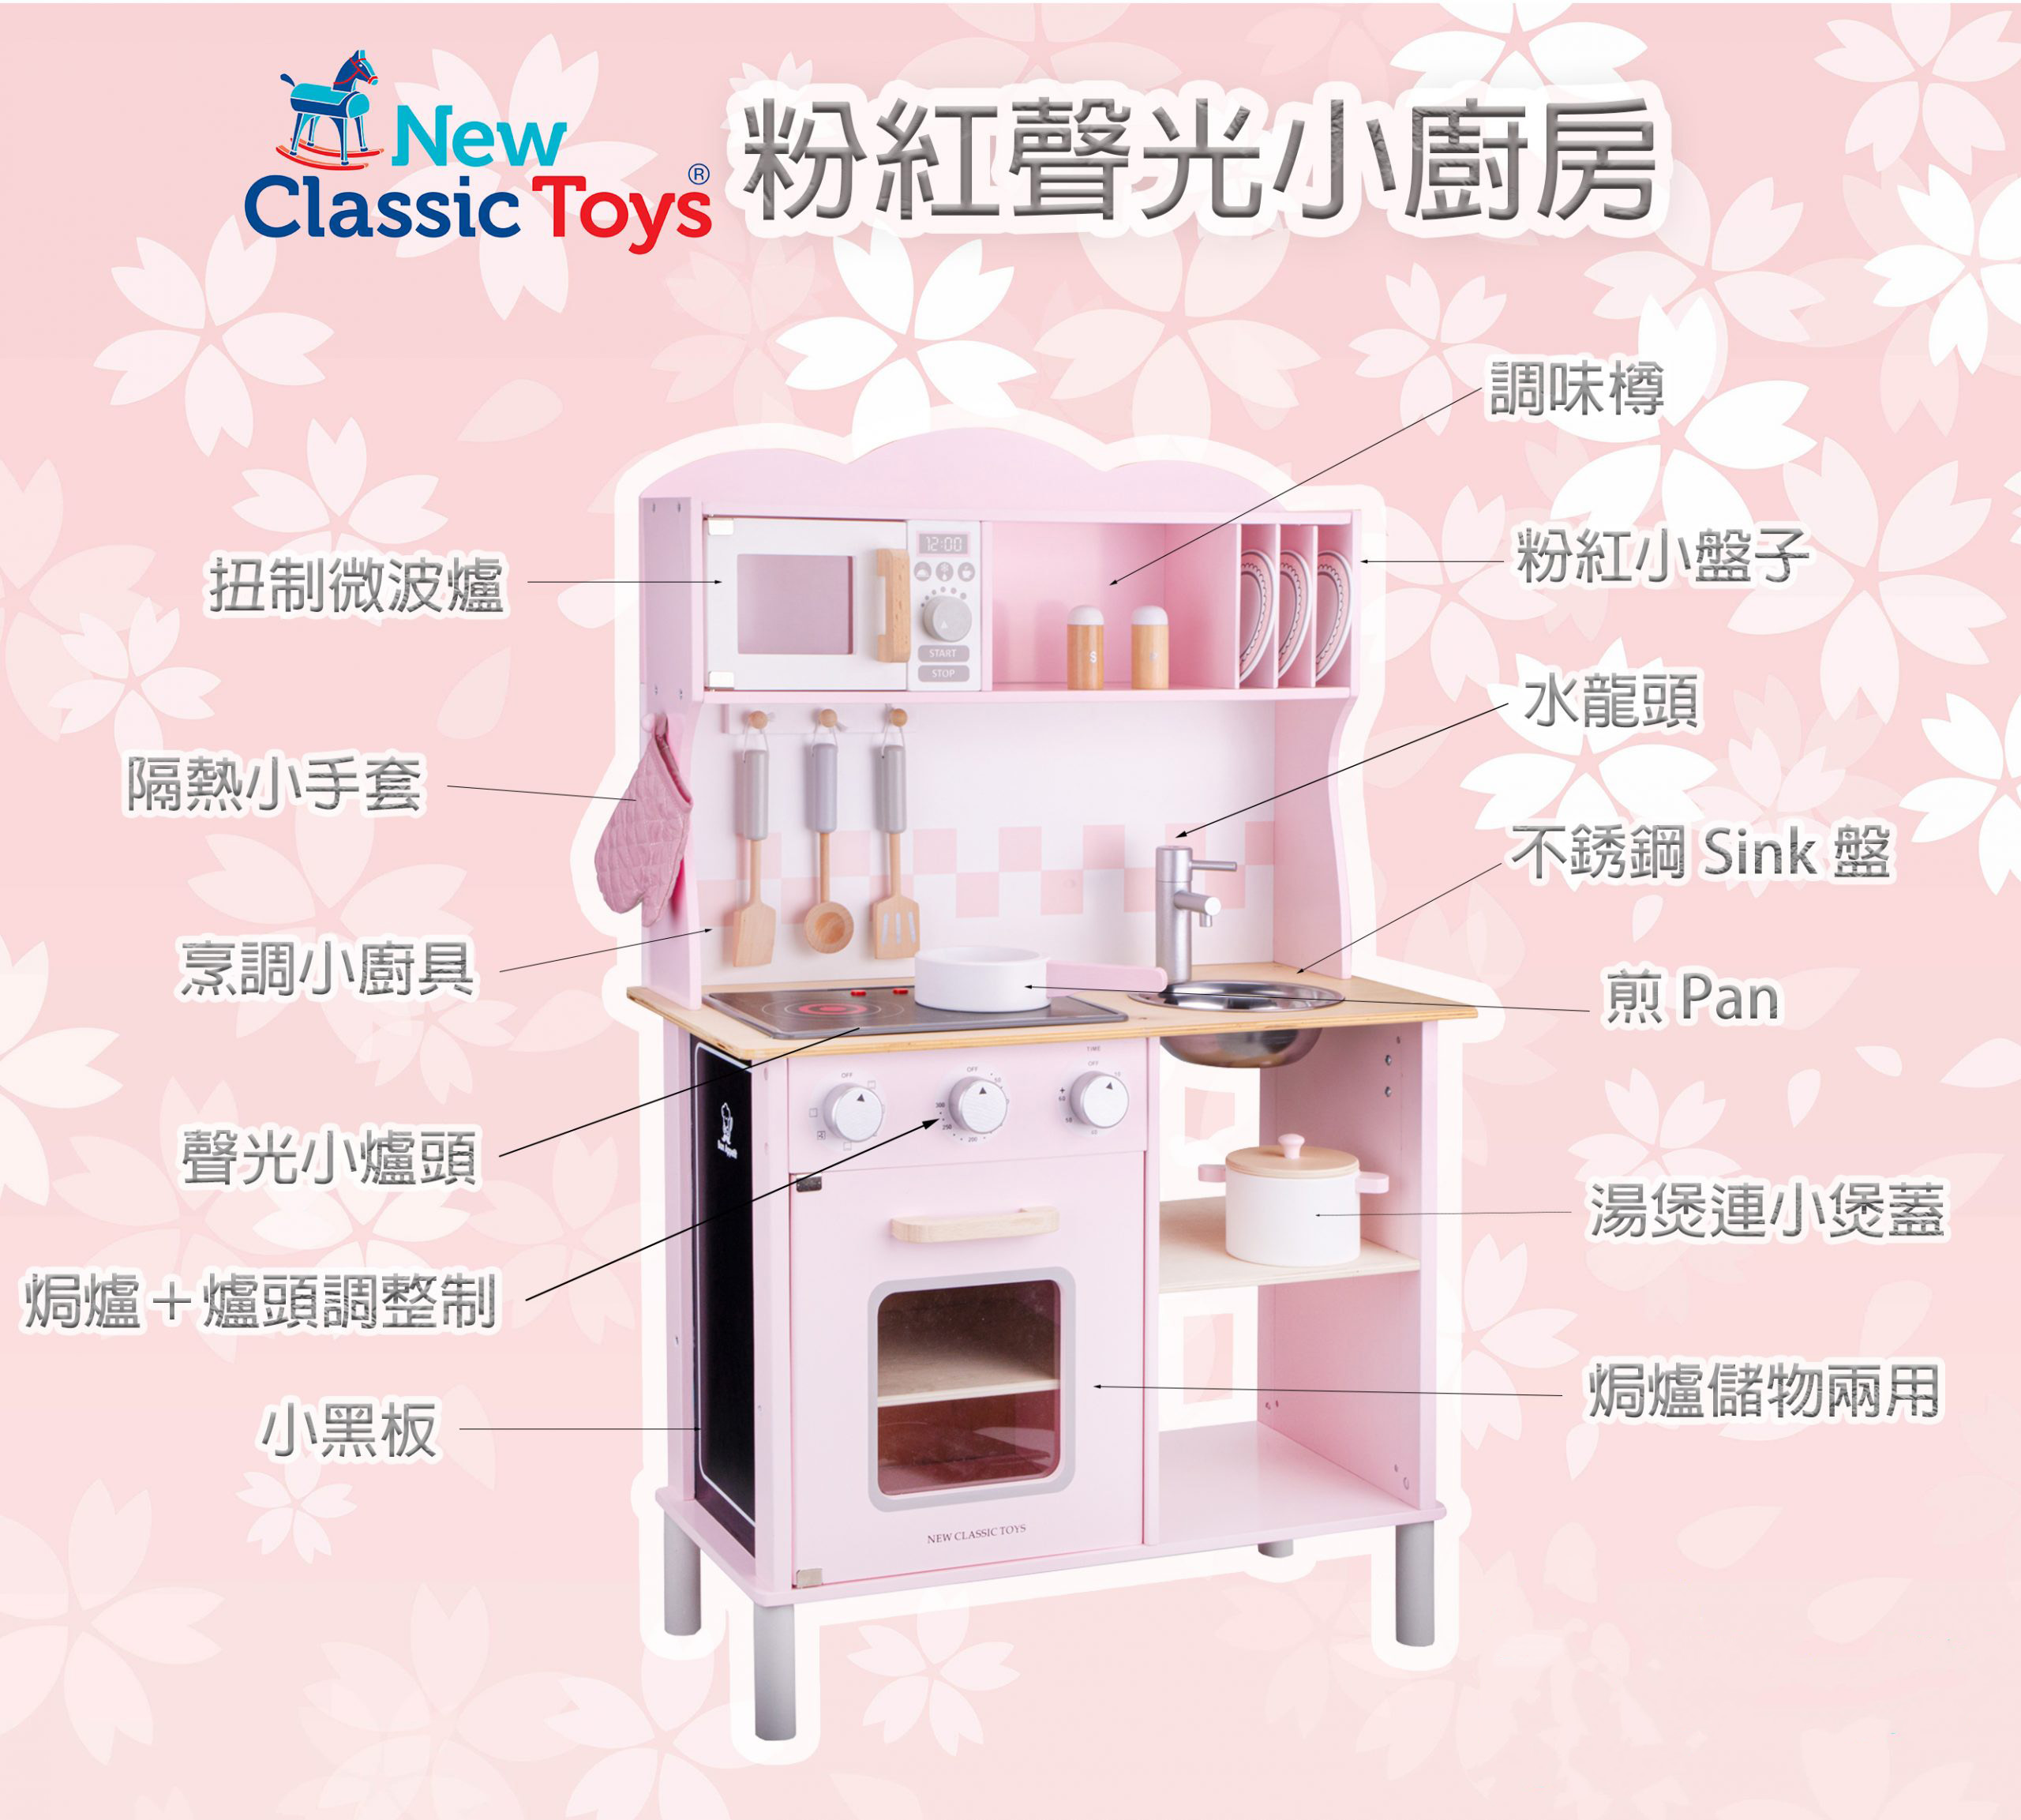 New Classic Toys - 木製聲光粉紅色廚房系列套裝玩具 #11067 8